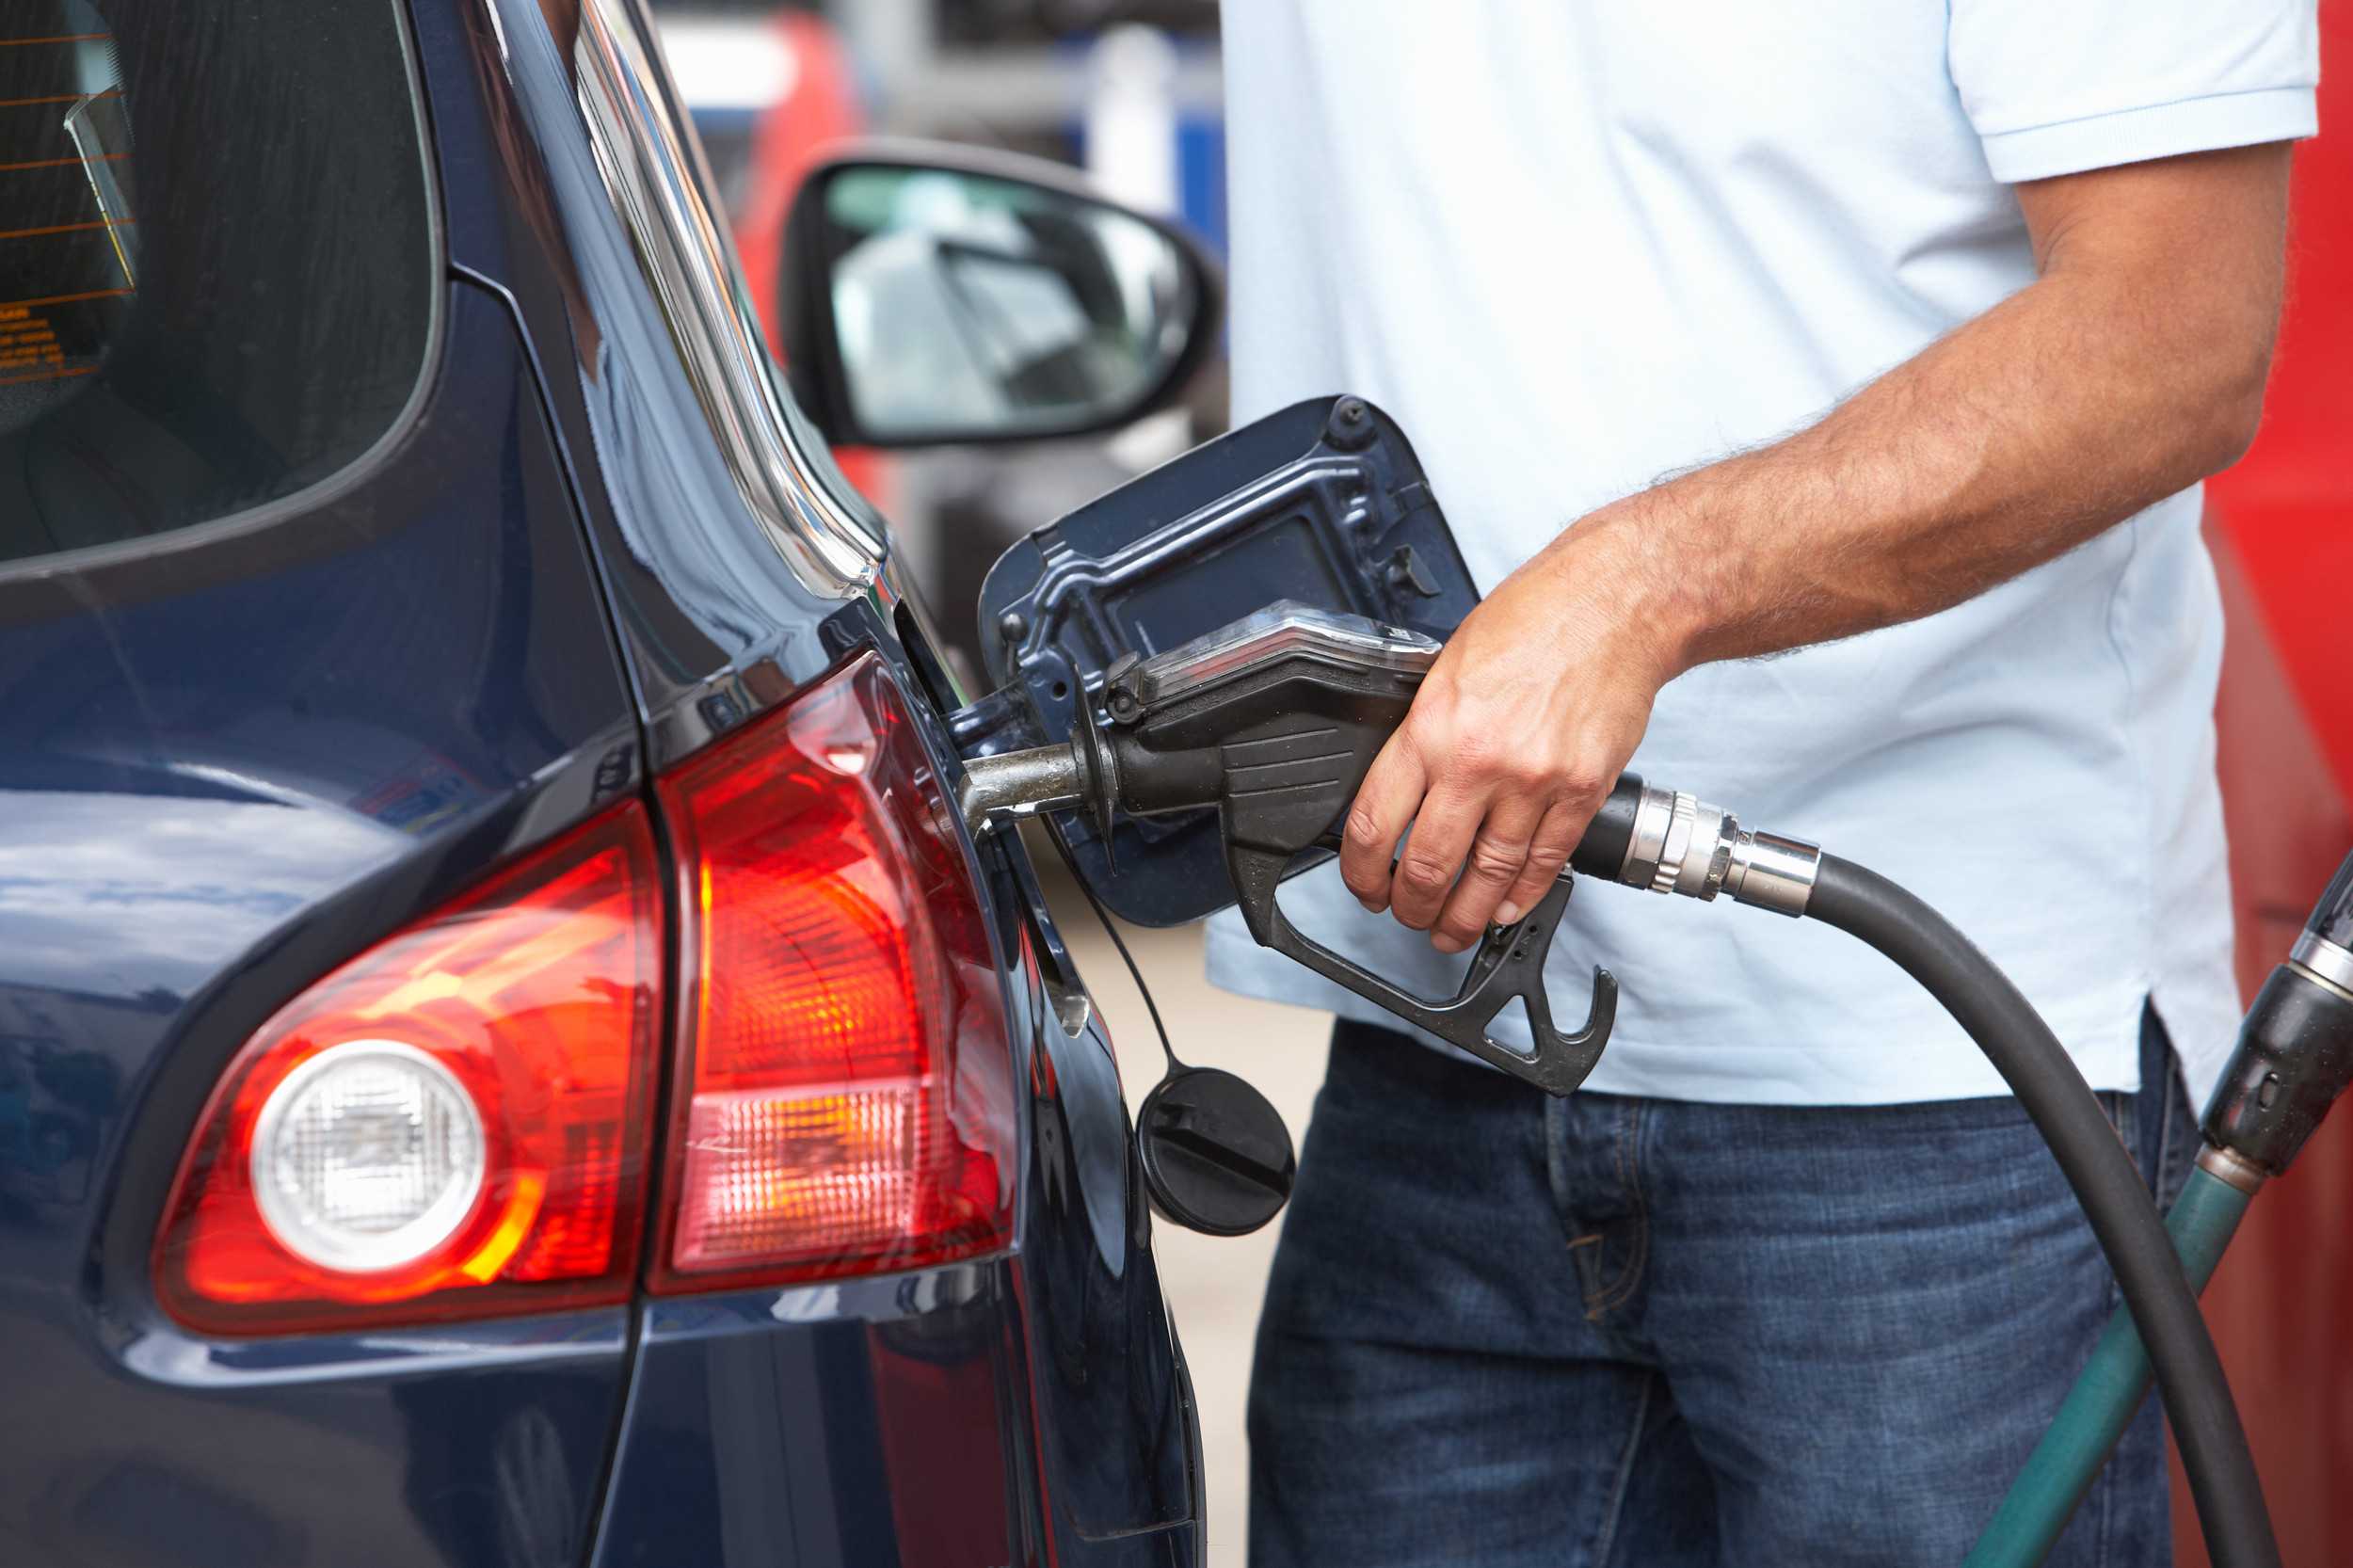 Преимущества и недостатки заправки автомобиля газом можно ли заправлять авто бытовым газом как все работает преимущества и недостатки заправки газом в домашних условиях